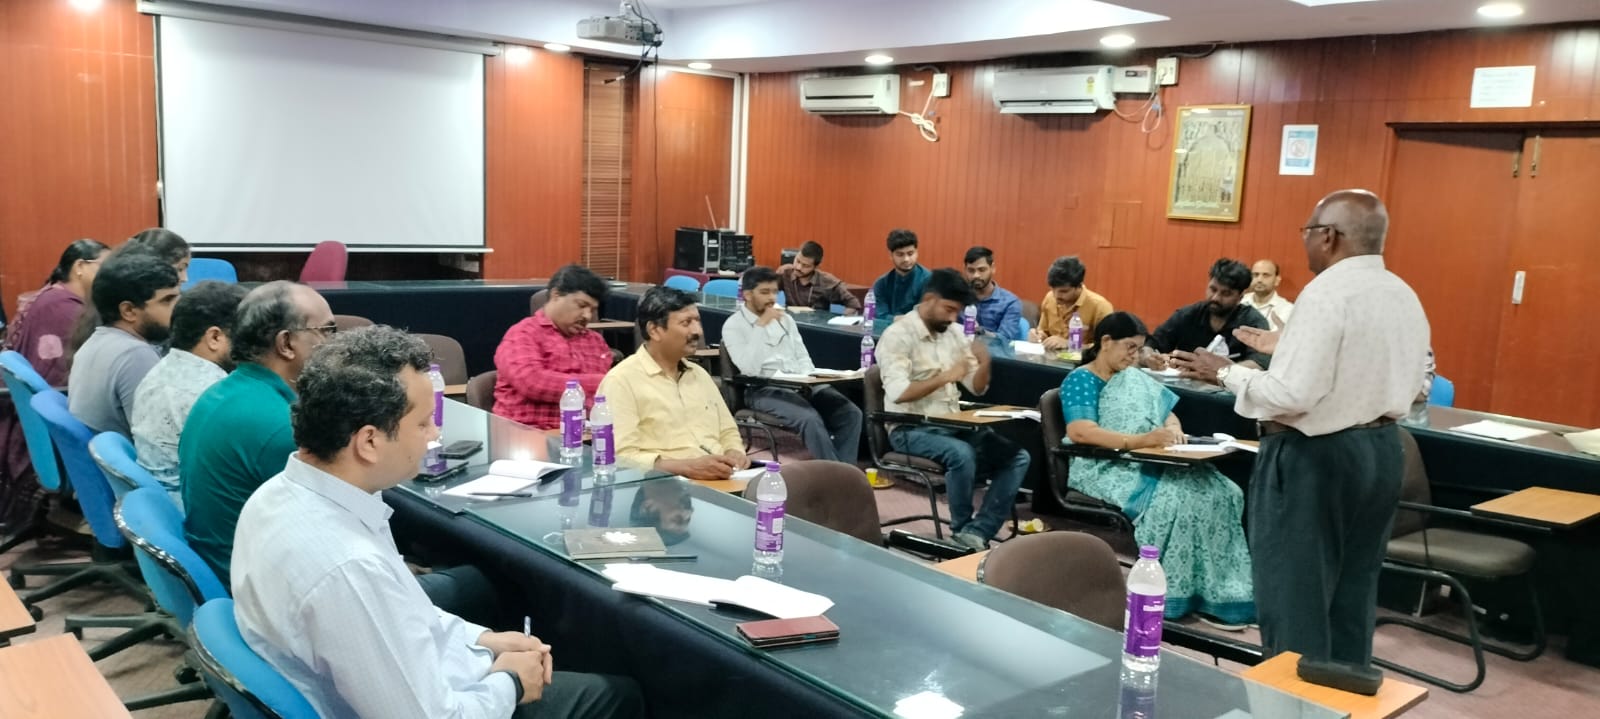 भारत सरकार टकसाल, हैदराबाद में आयोजित एक दिवसीय हिंदी कार्यशाला